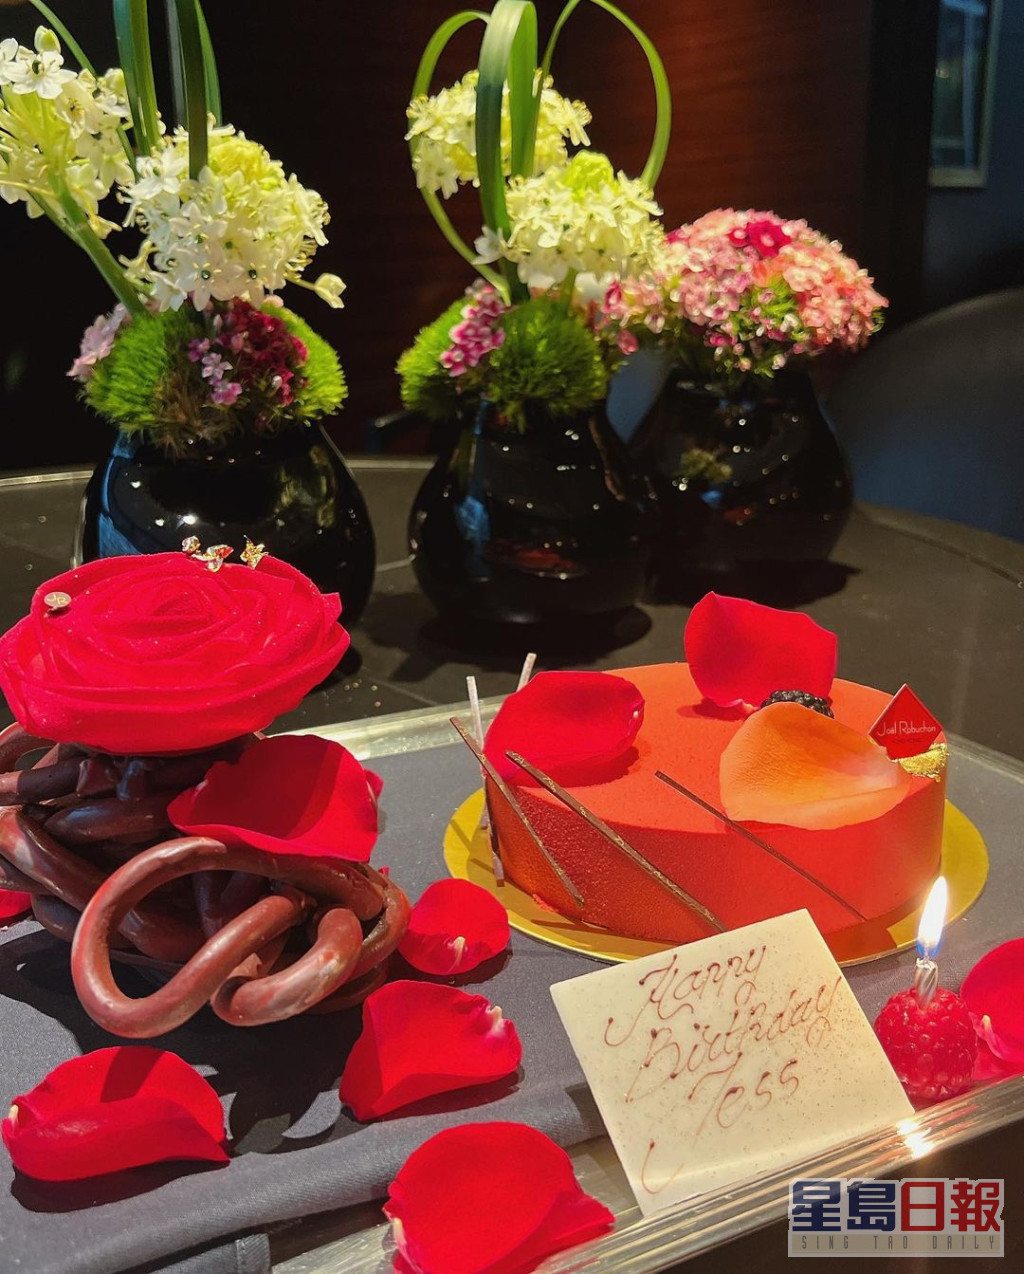 沈卓盈生日獲贈佈滿玫瑰花瓣的紅色蛋糕。